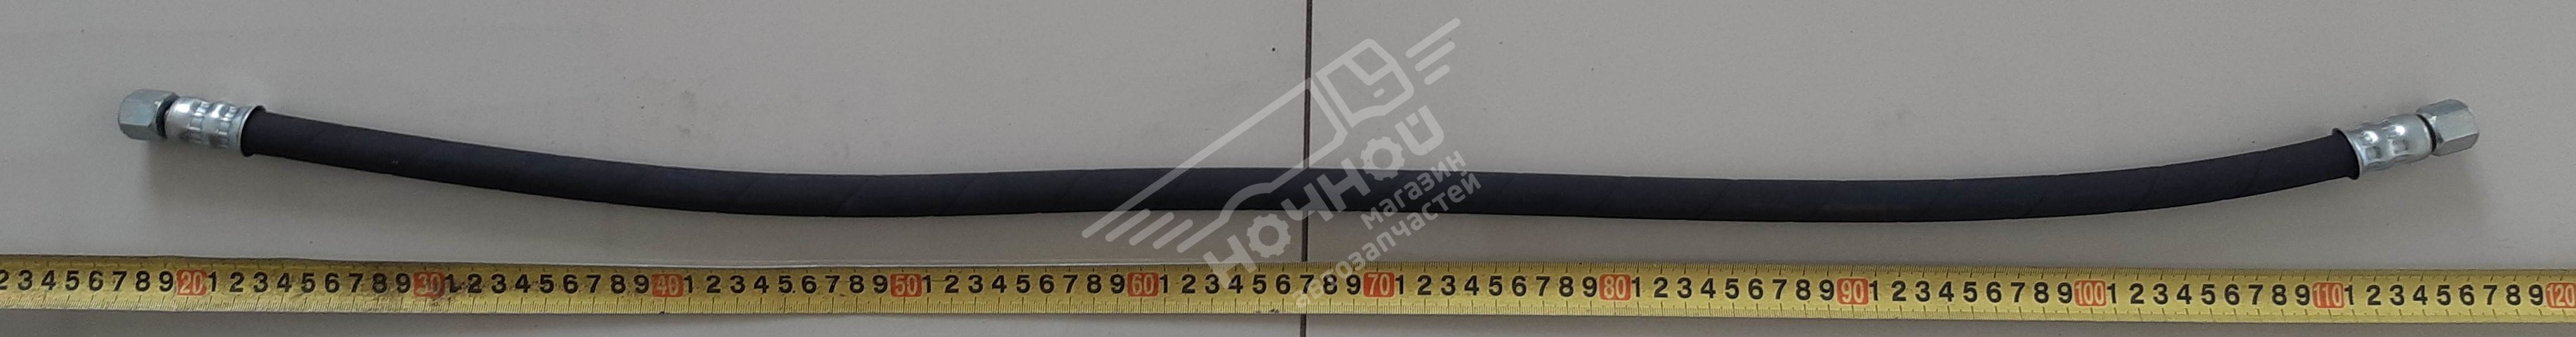 Шланг ПАЗ ГУР 3205 нагнетательный длинный (L=990мм)